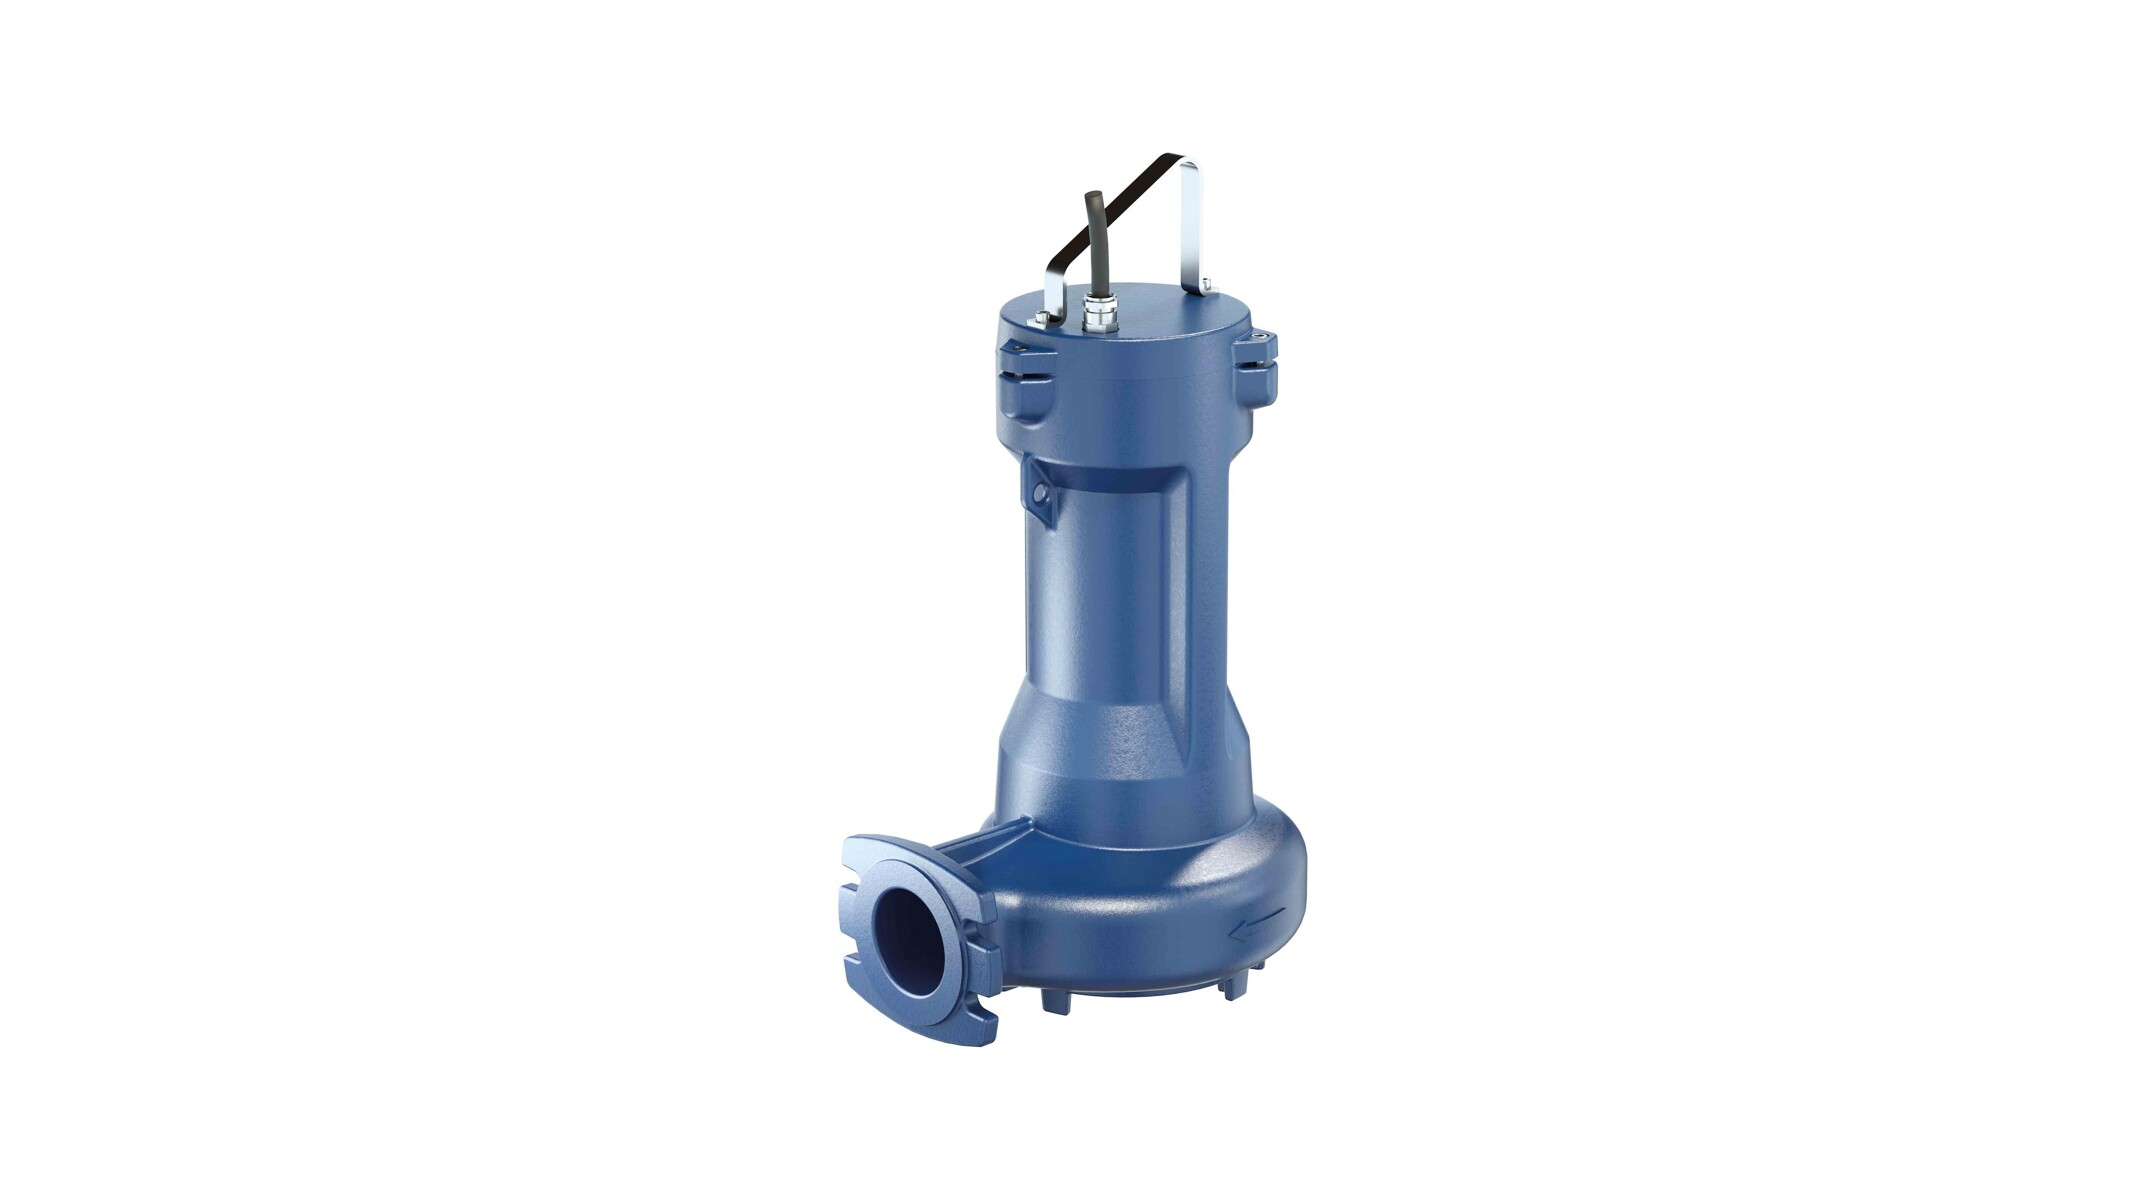 New Amarex waste water pump